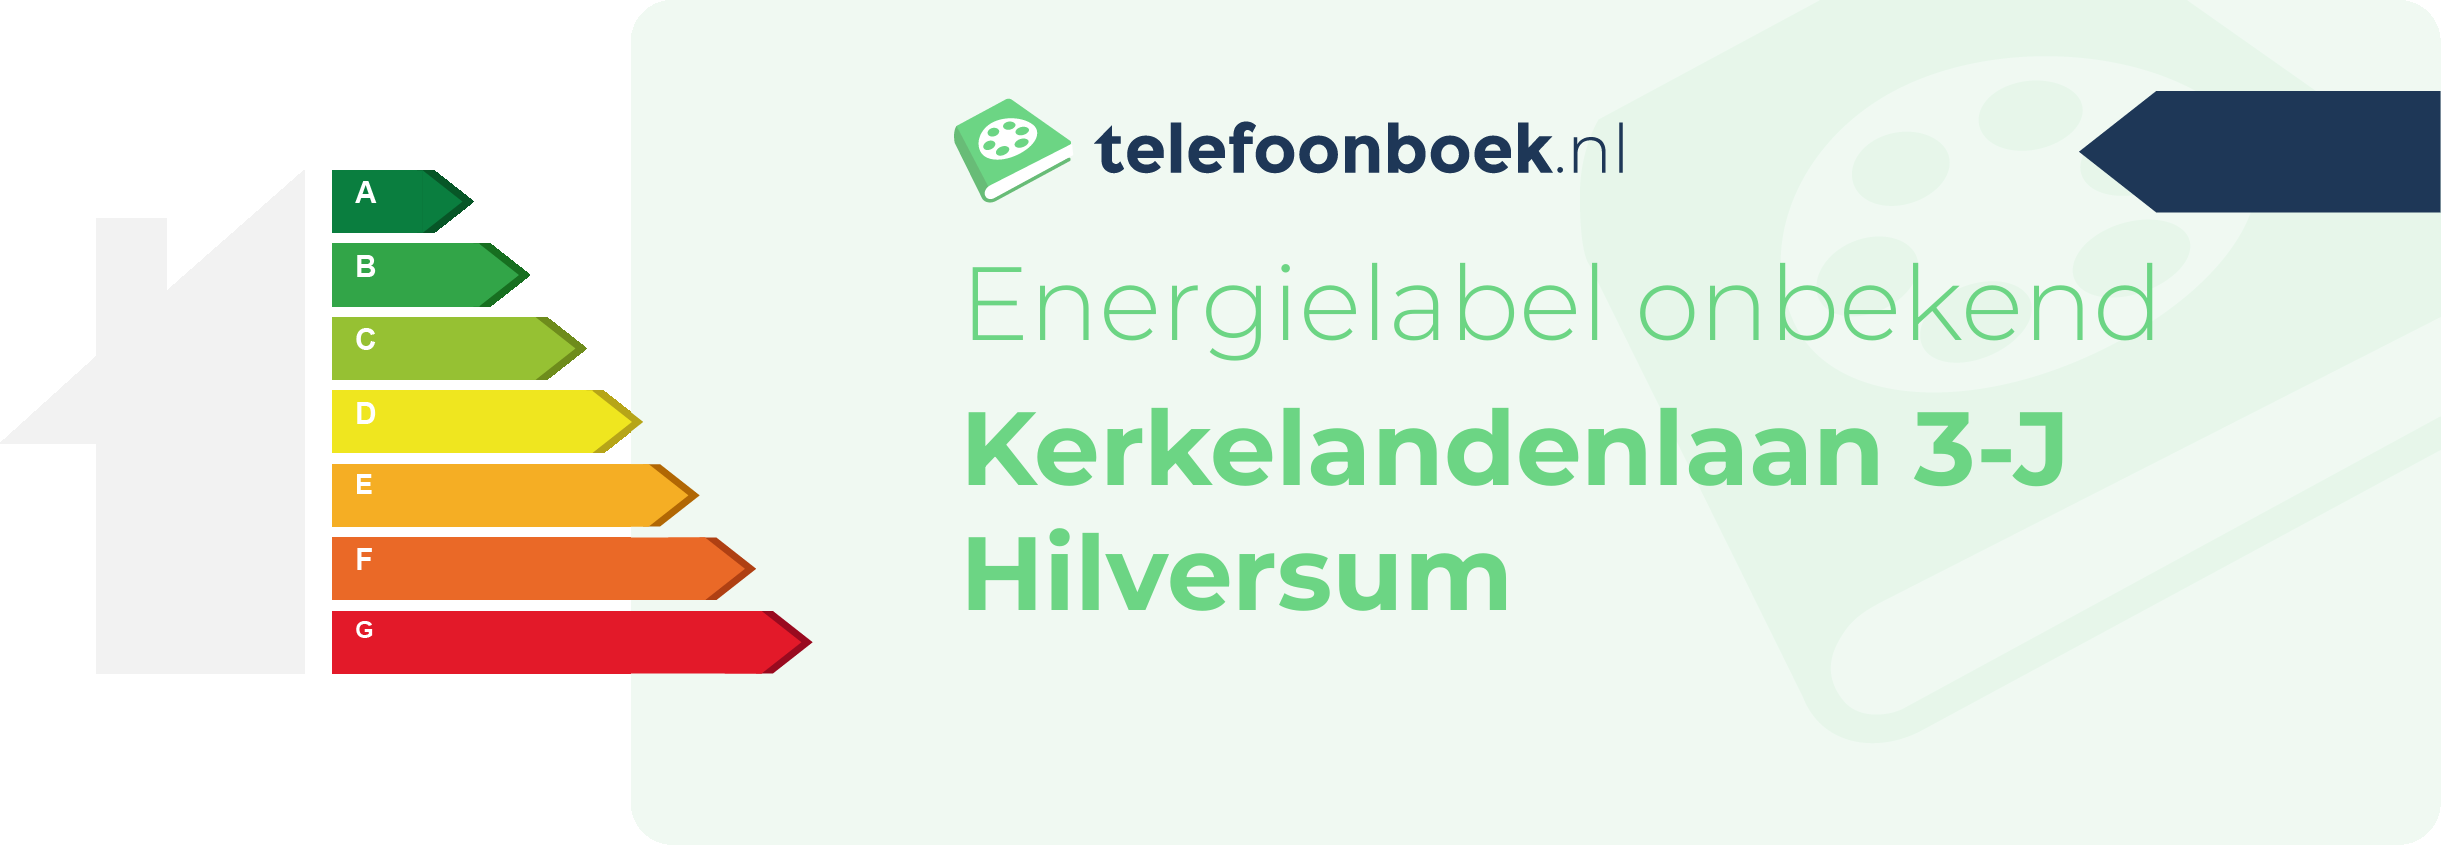 Energielabel Kerkelandenlaan 3-J Hilversum